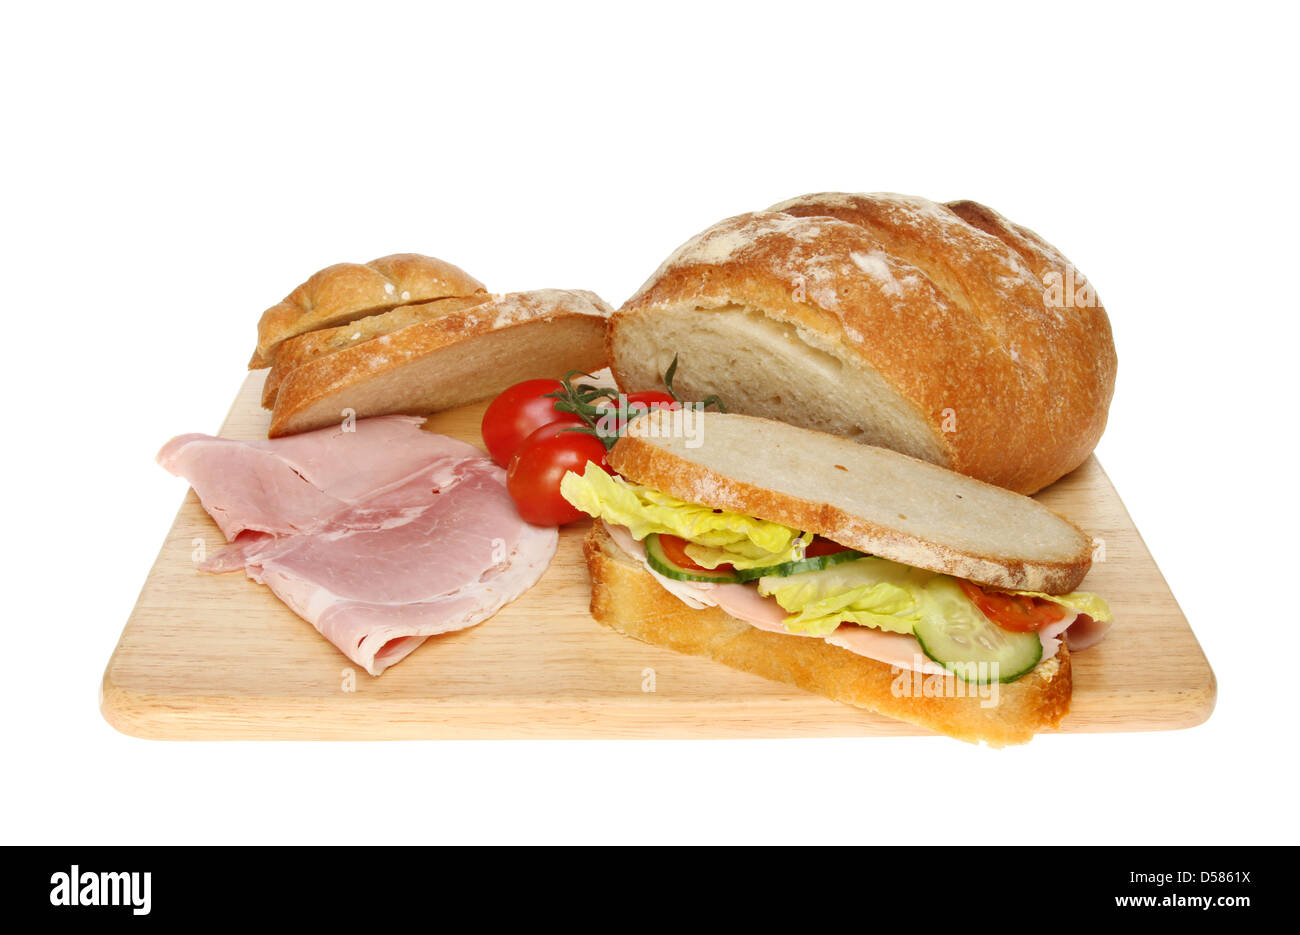 Bloomer fraîchement cuits, pain, sandwich jambon et tomates sur une planche en bois isolés contre white Banque D'Images